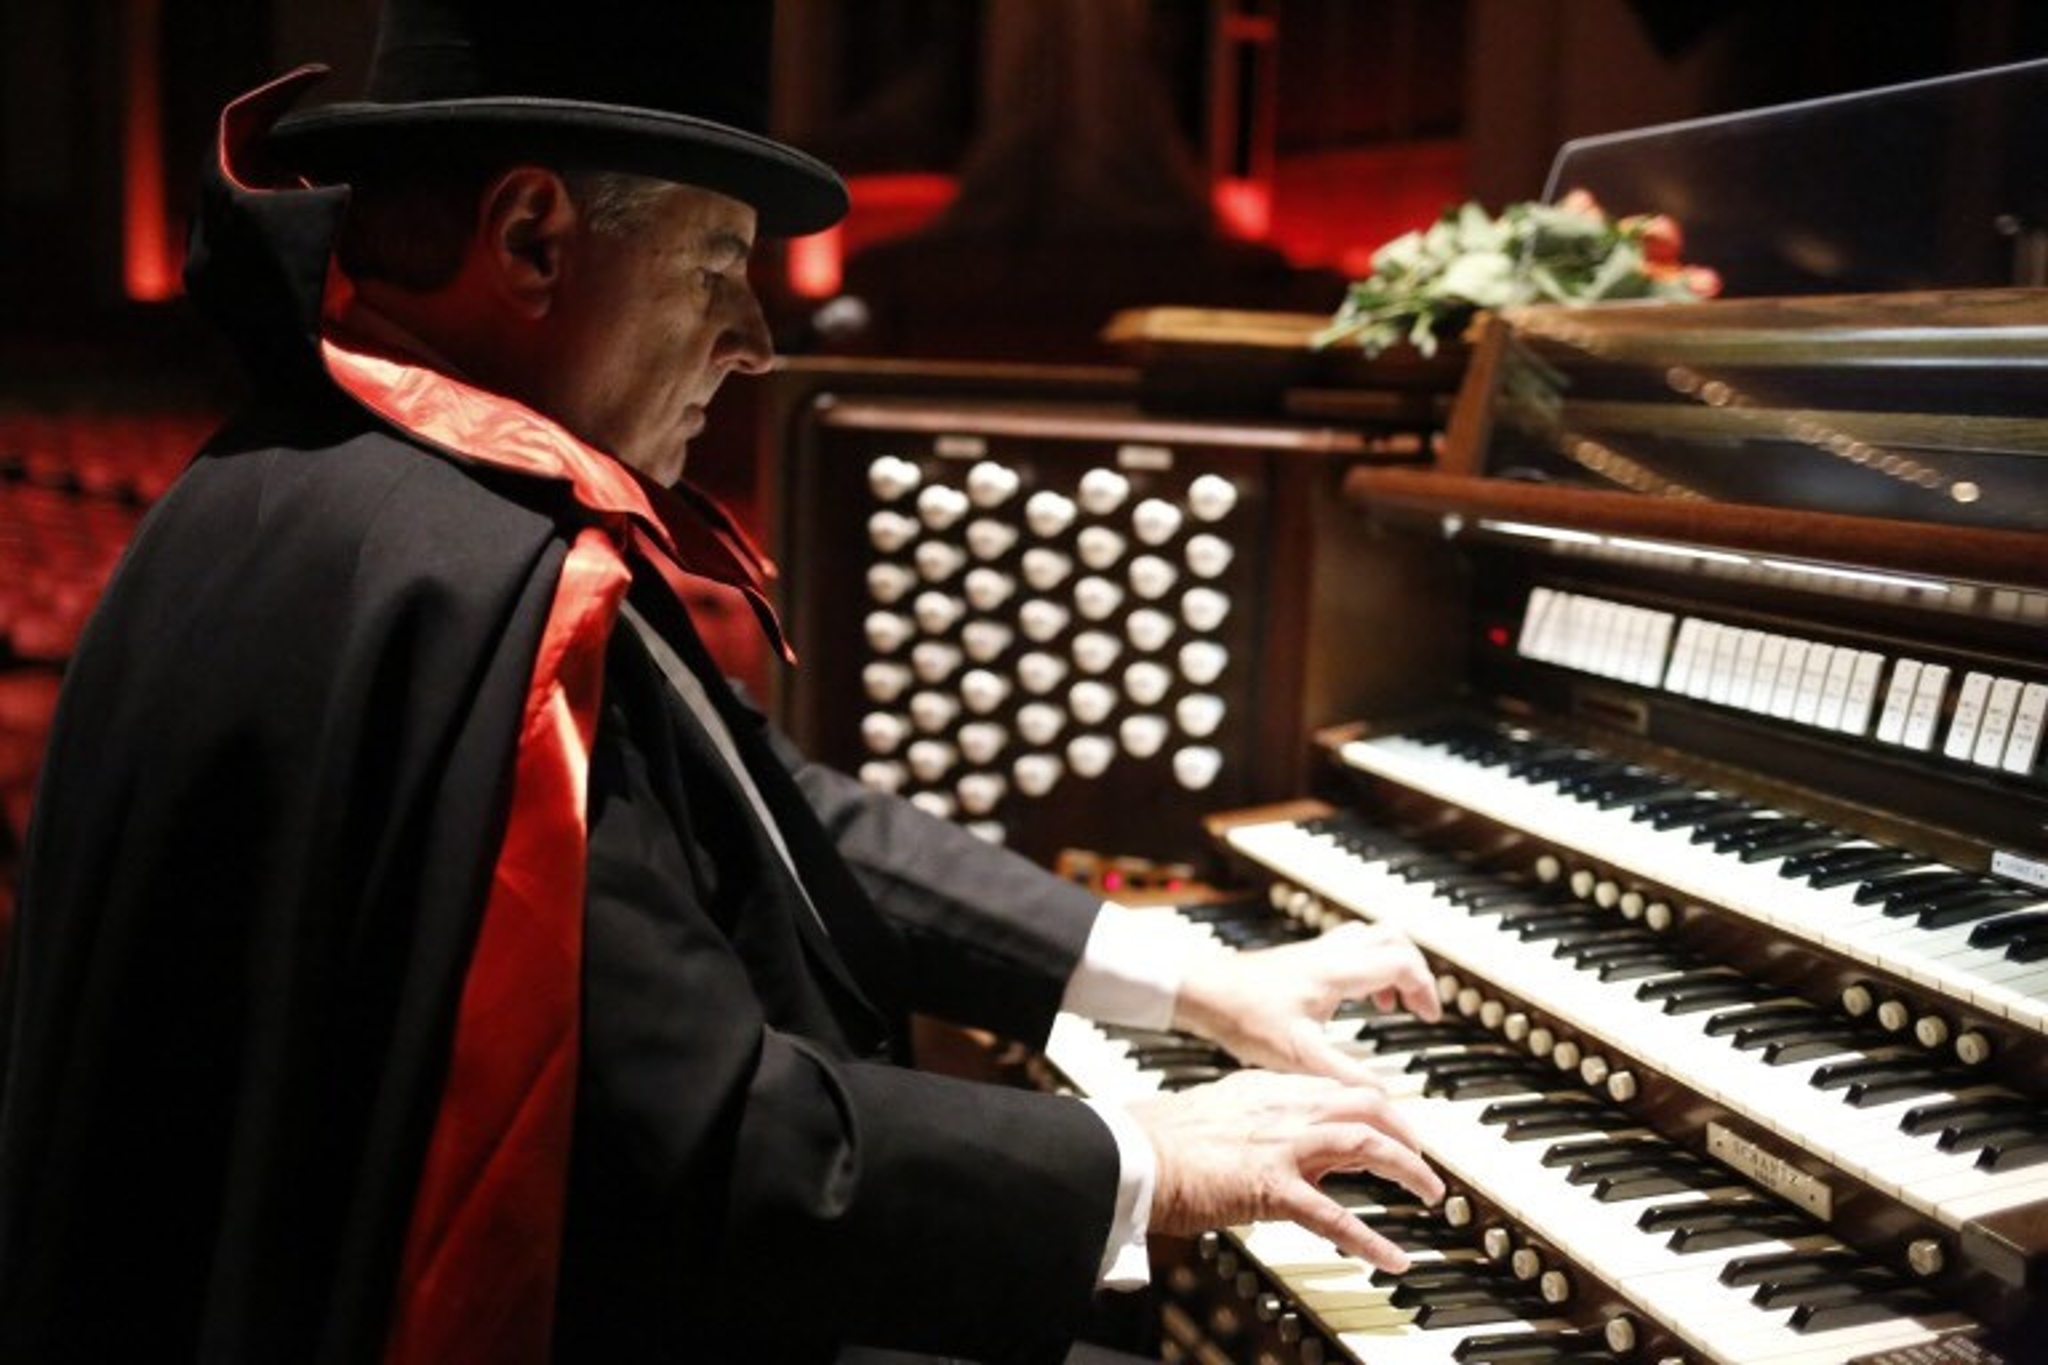 senior citizen amateur organists